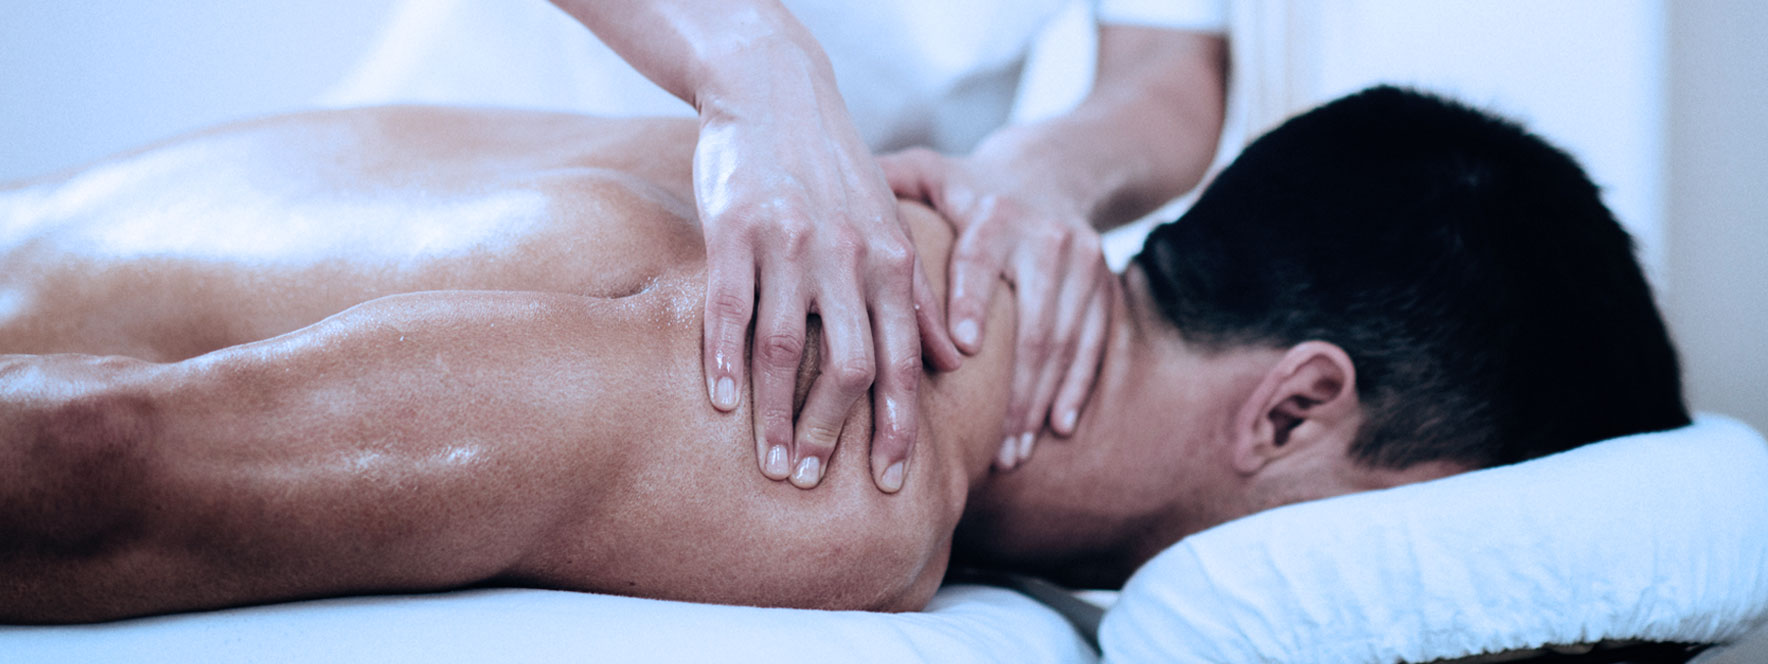 Un homme se fait masser une épaule sur une table de massothérapie